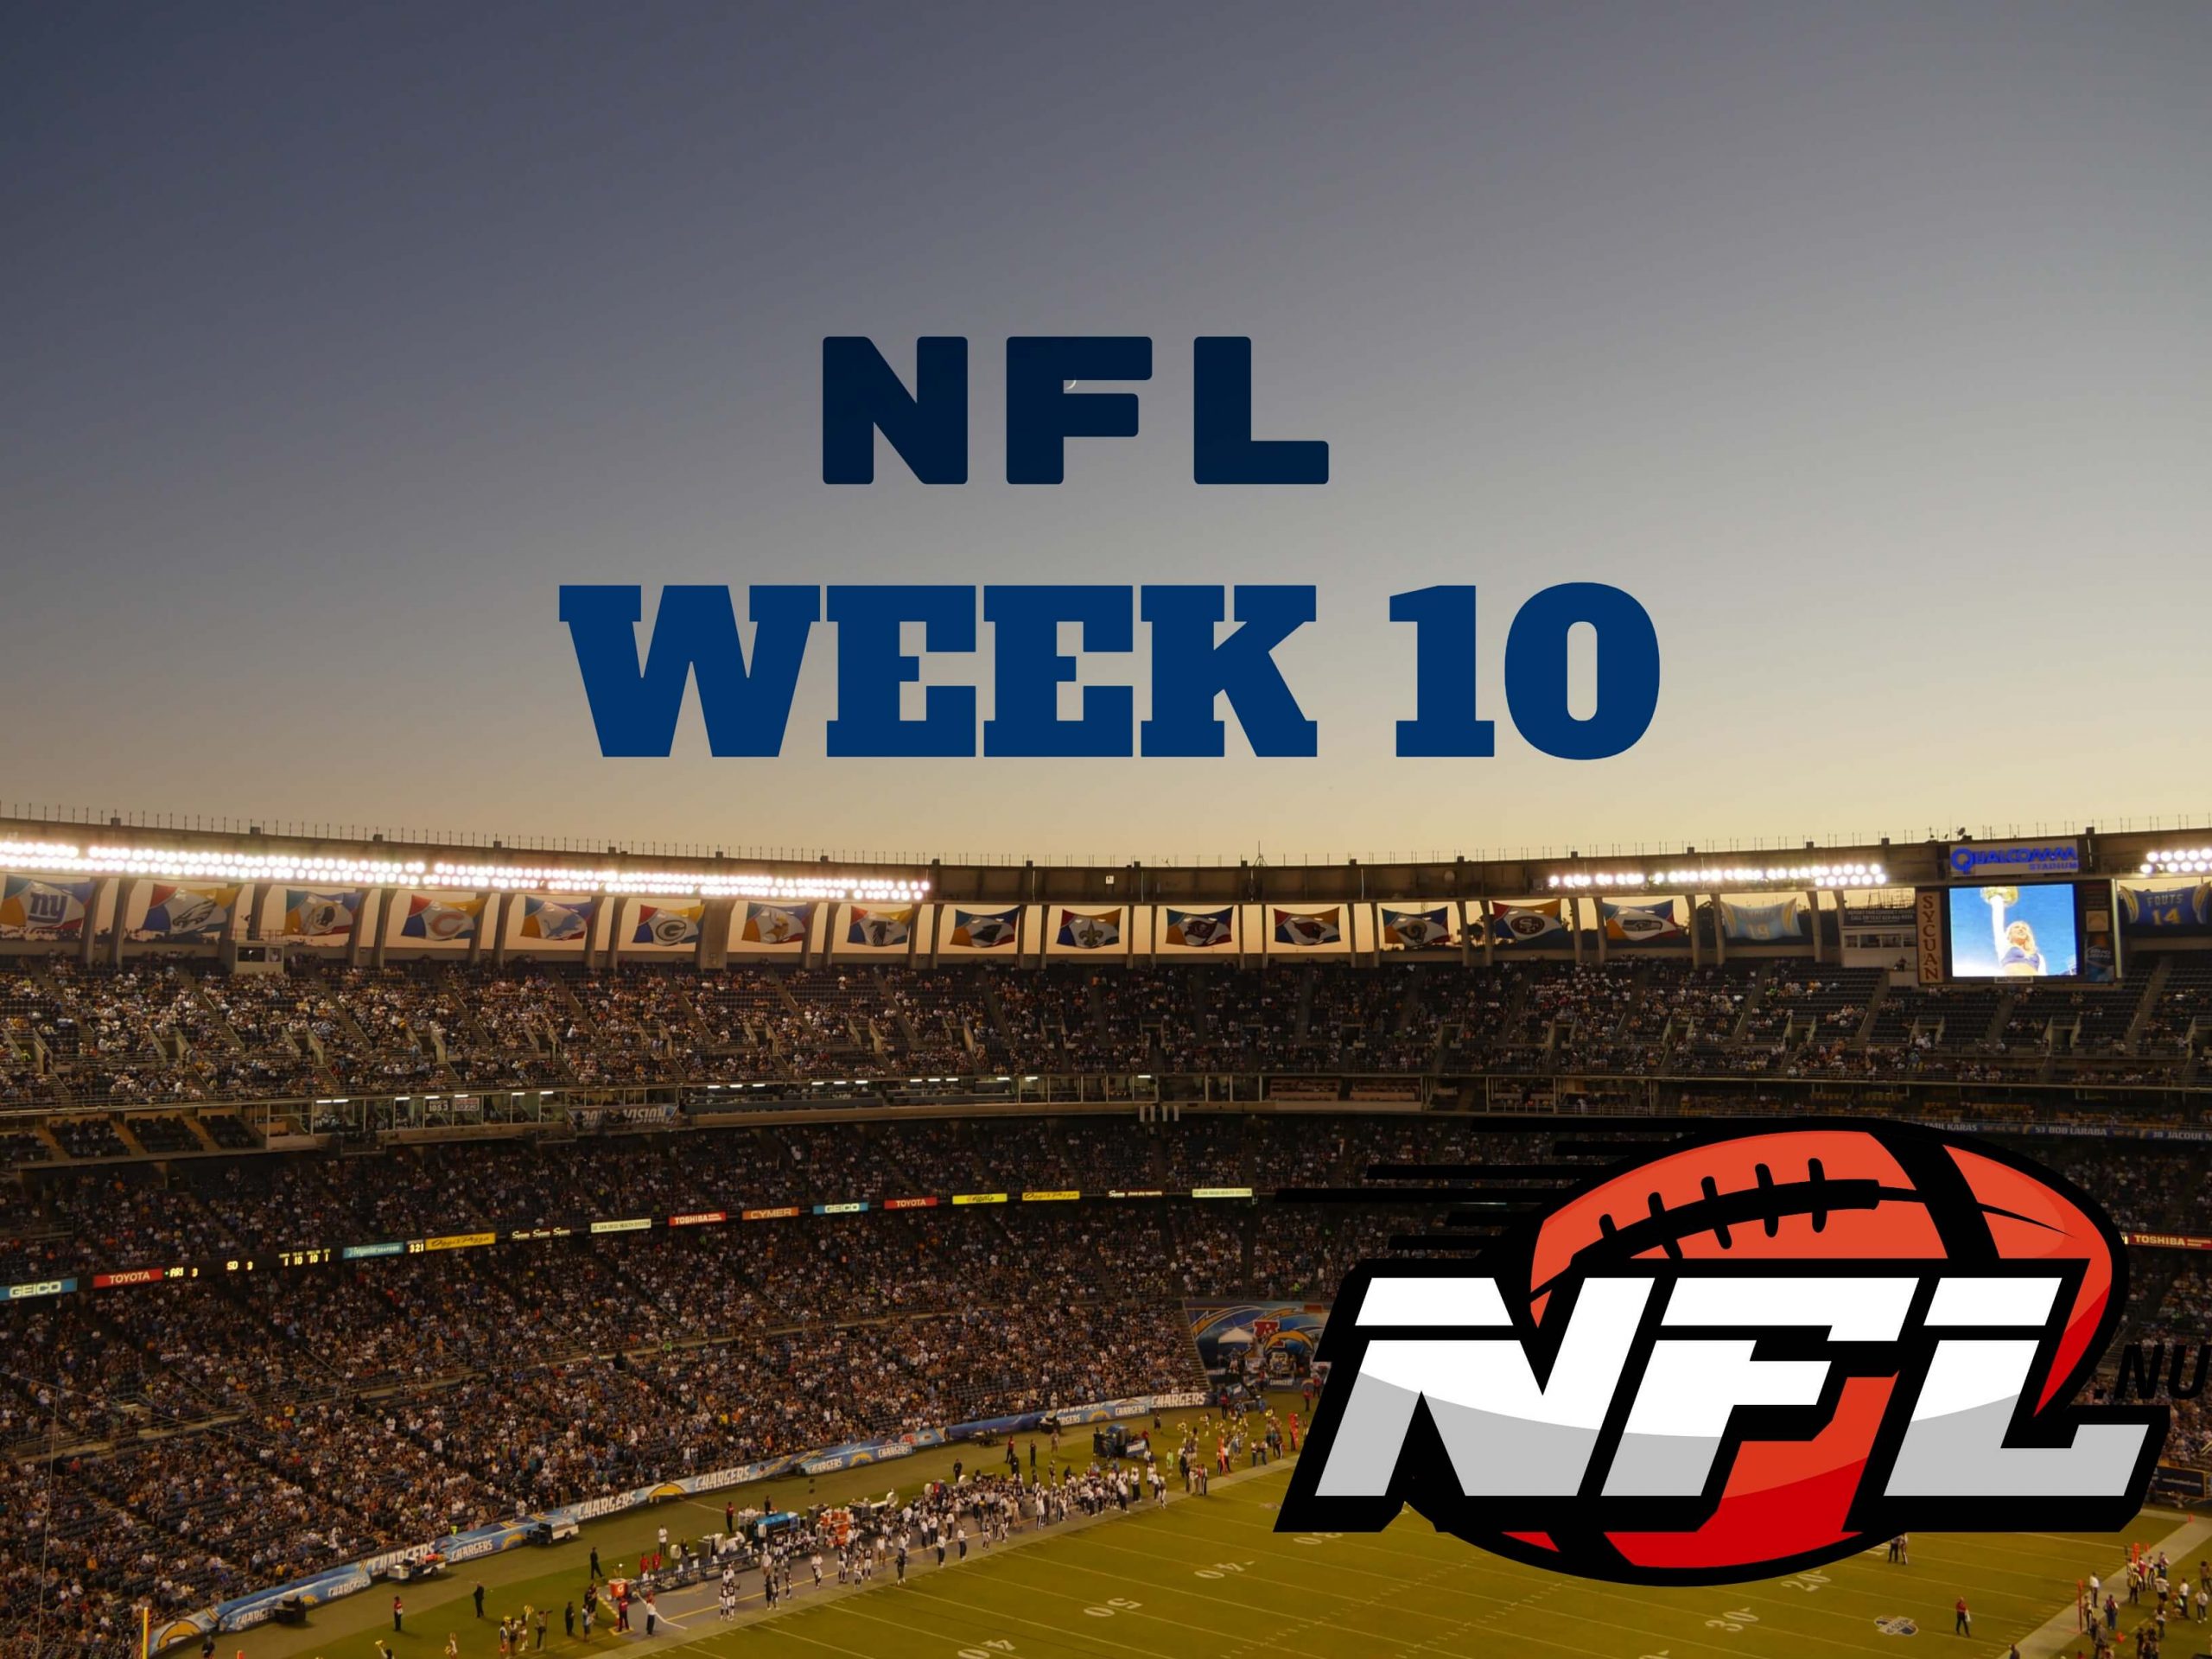 NFL Week 10